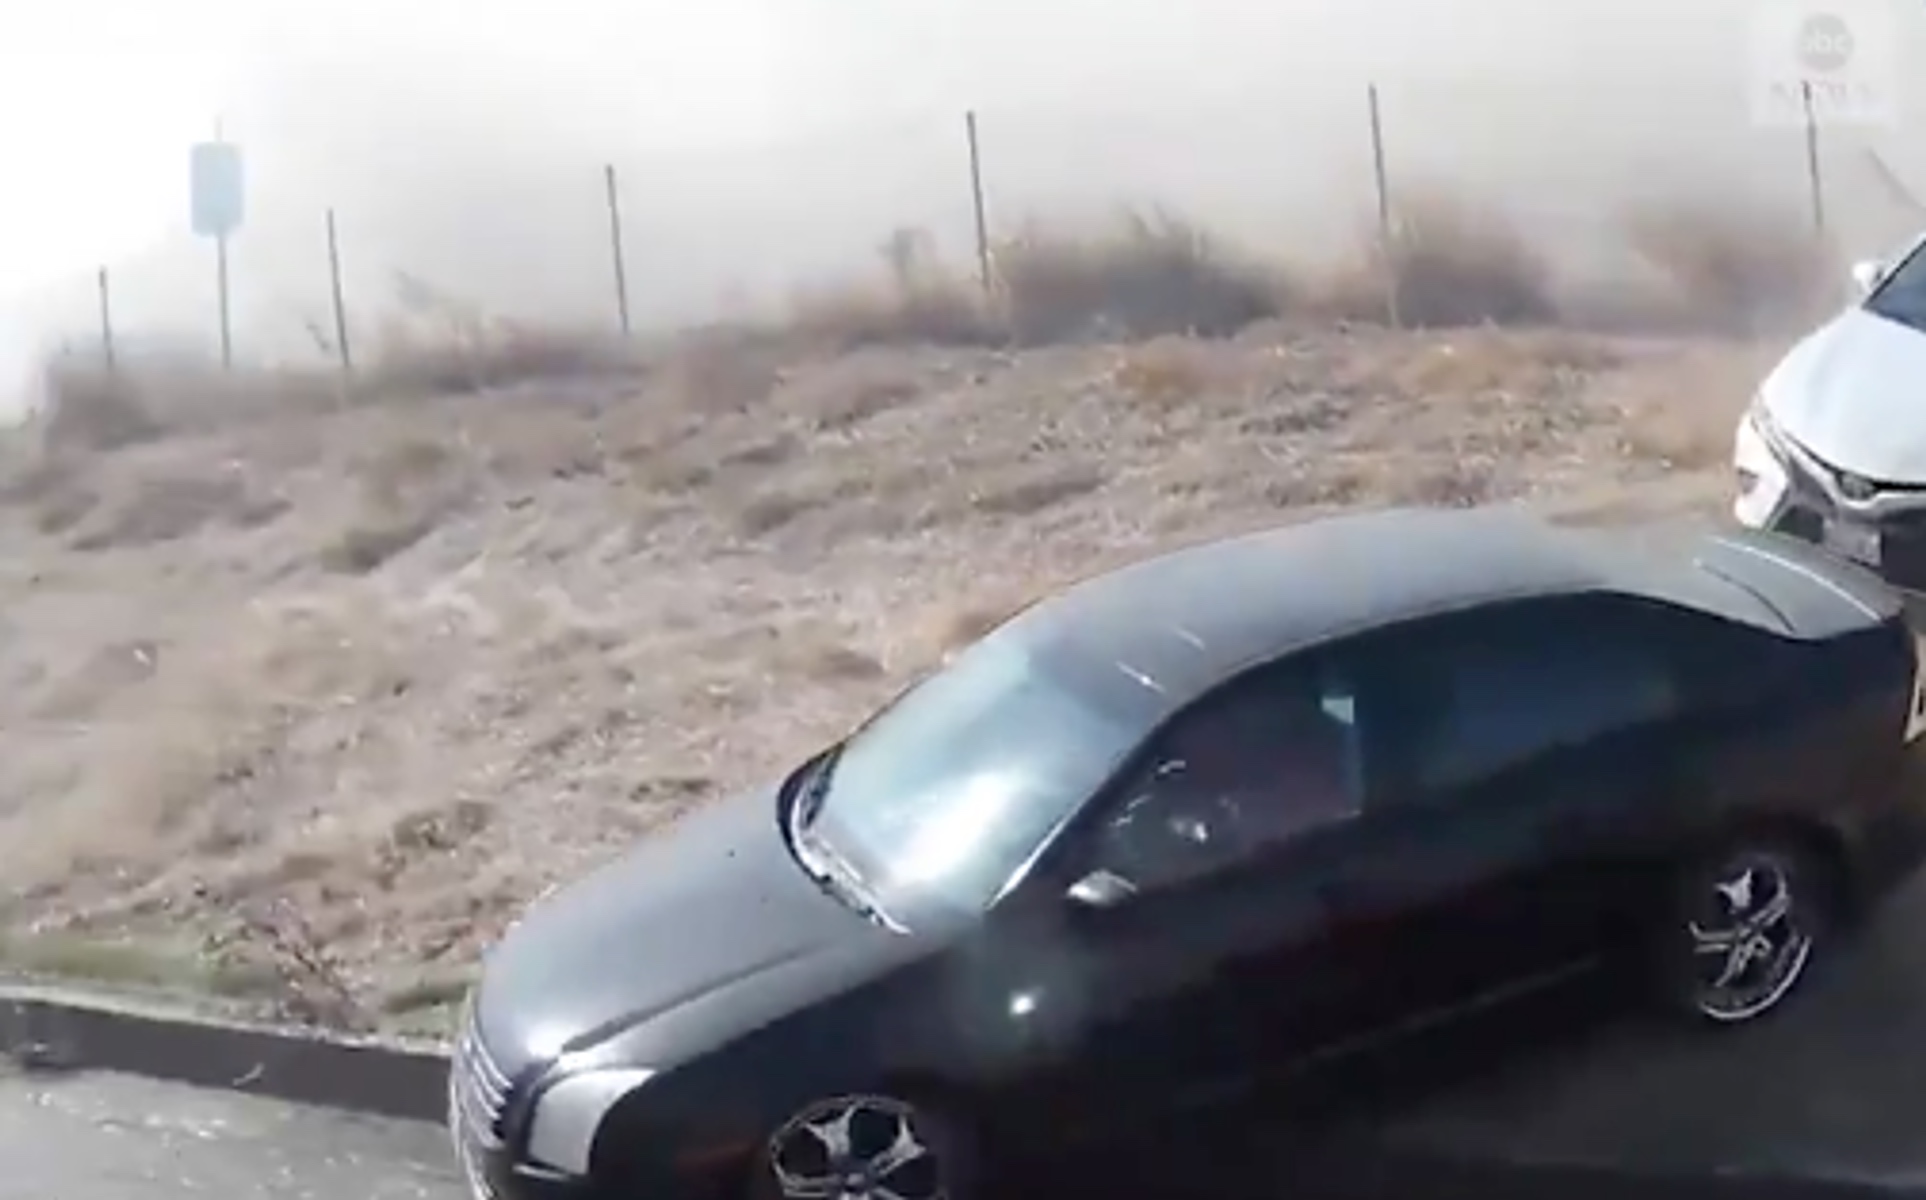 Πολίτης σώζει δεκάδες οδηγούς στην Καλιφόρνια λίγο πριν καούν ζωντανοί! [video]